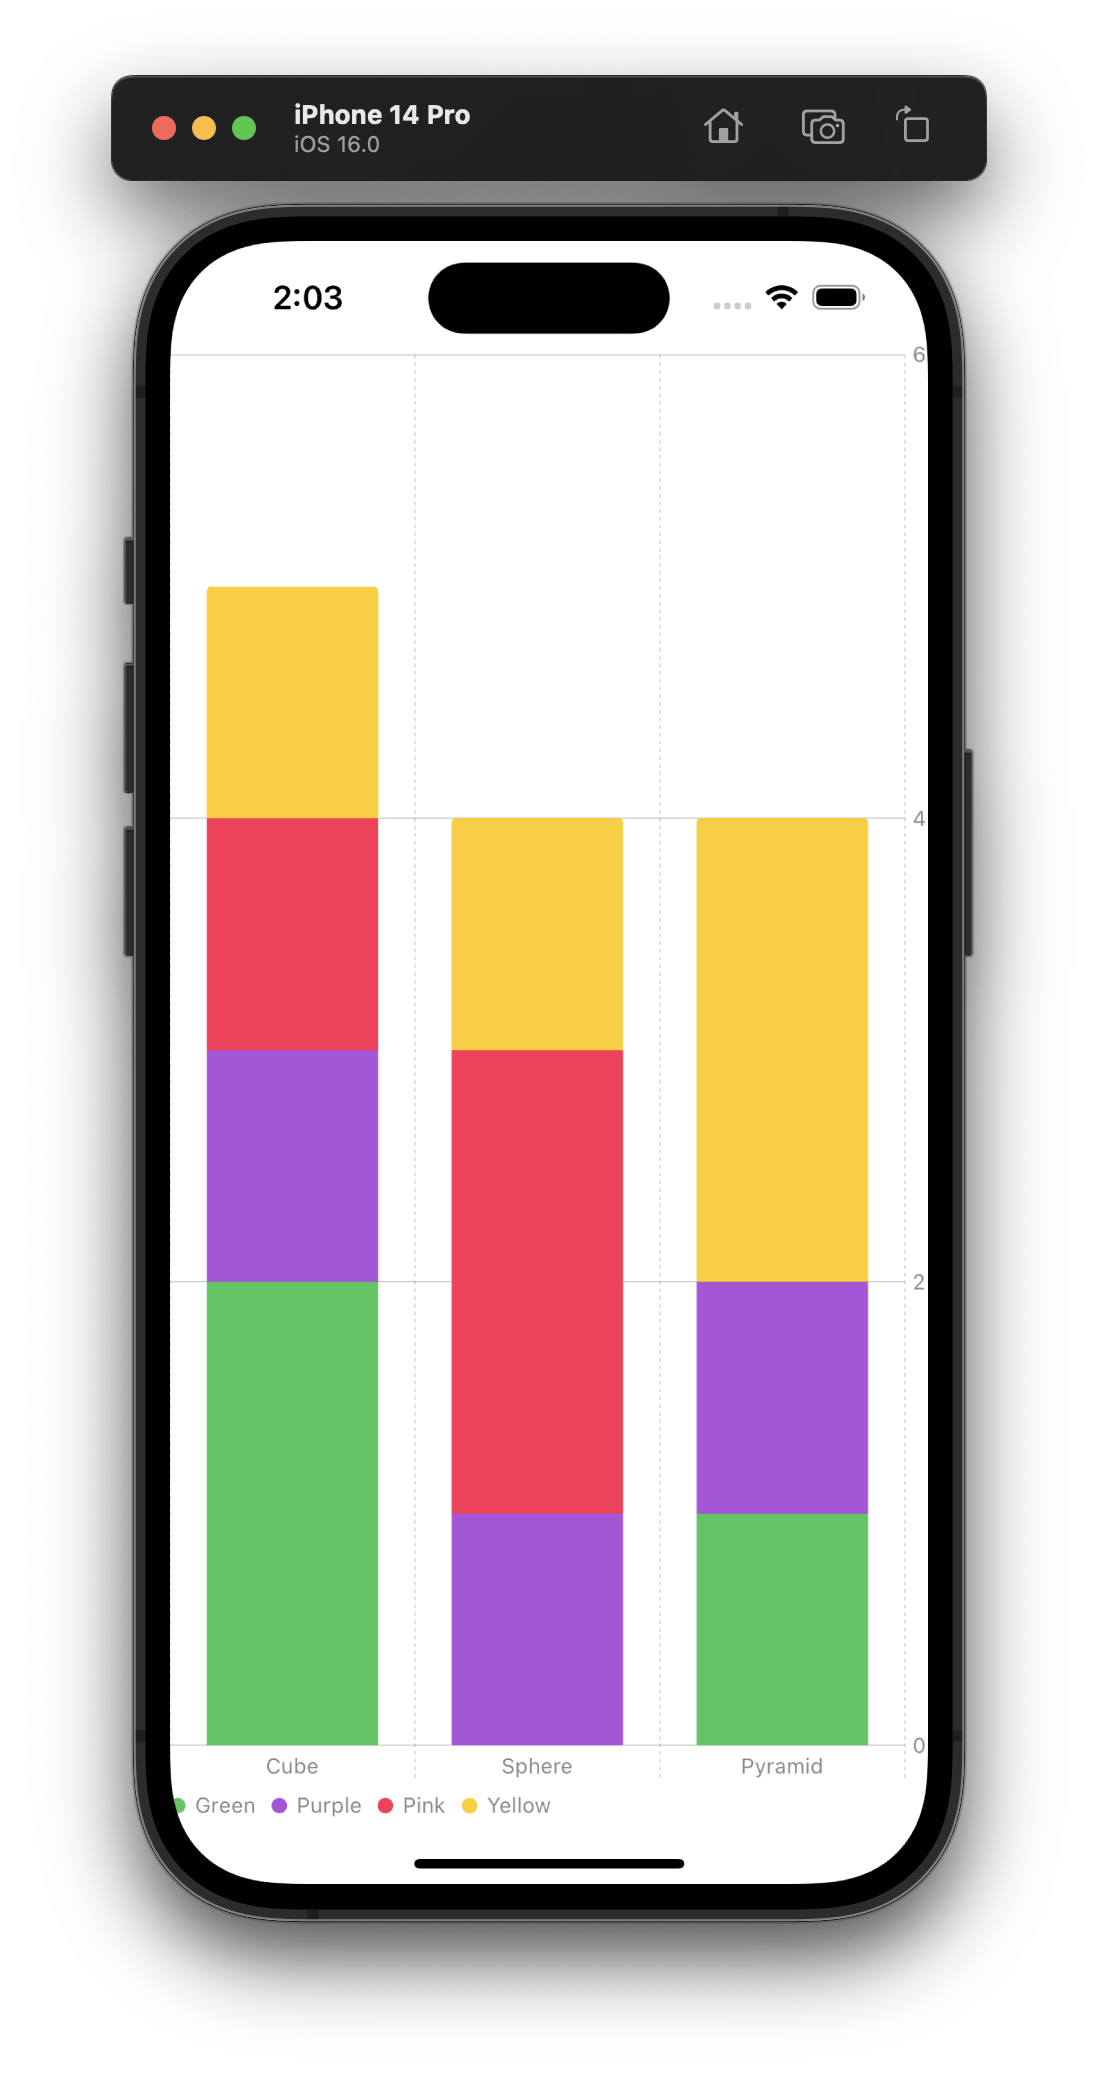 Created a color SwiftUI bar chart